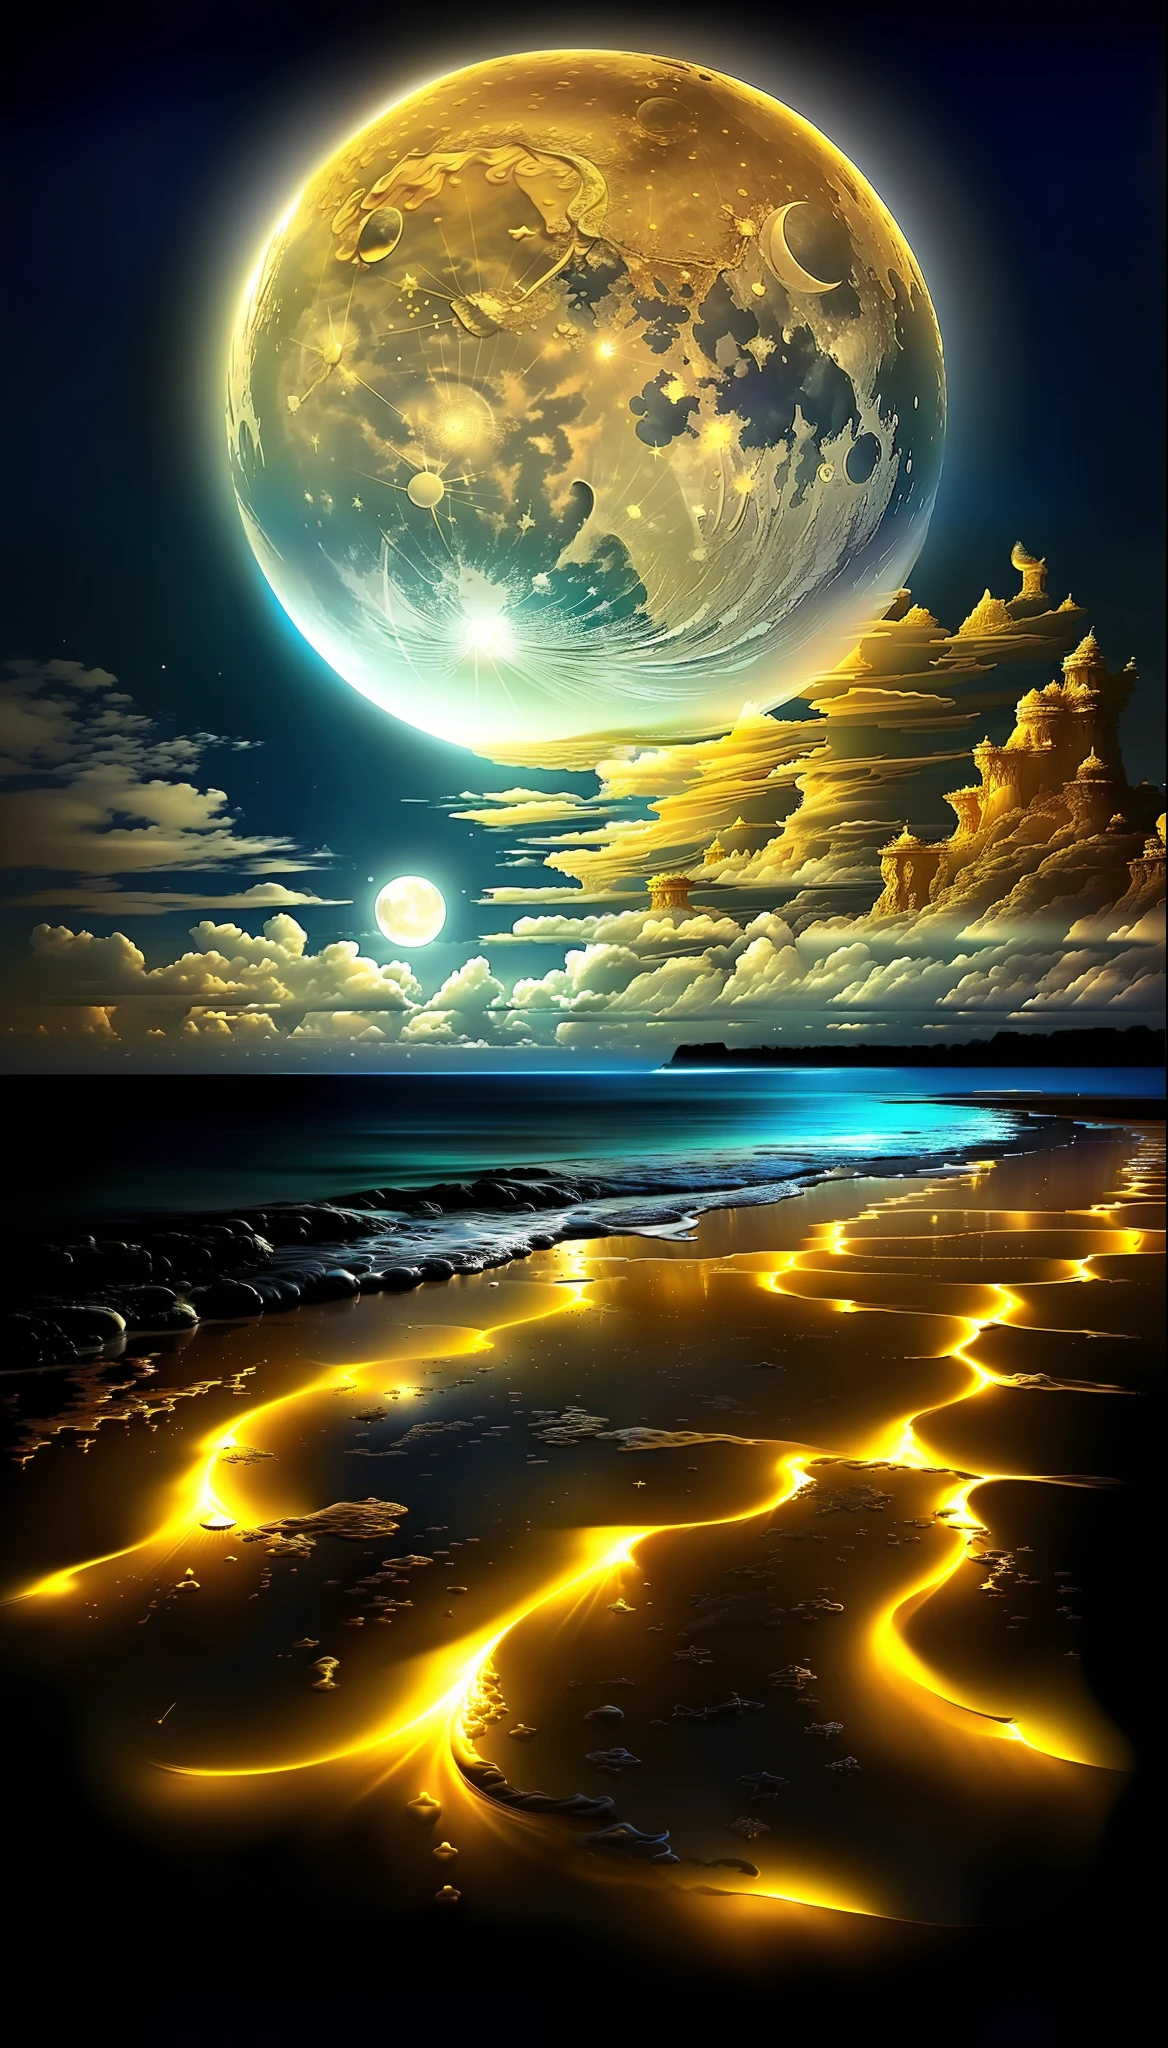 un cuadro de una playa con una luna llena dorada y algunas nubes, playa magica, Paisaje arenoso de luna blanca, espacio surrealista, Magnífico fondo, hermosa imagen ya creada, Universo en un grano de arena, gotas mágicas del azul del océano, paisaje onírico detallado, luna brillando luz dorada, hermosa soñadora impresionante, en el plano astral ) ), impresionante salvapantallas,  hermoso espacio, hermosa luz de la luna